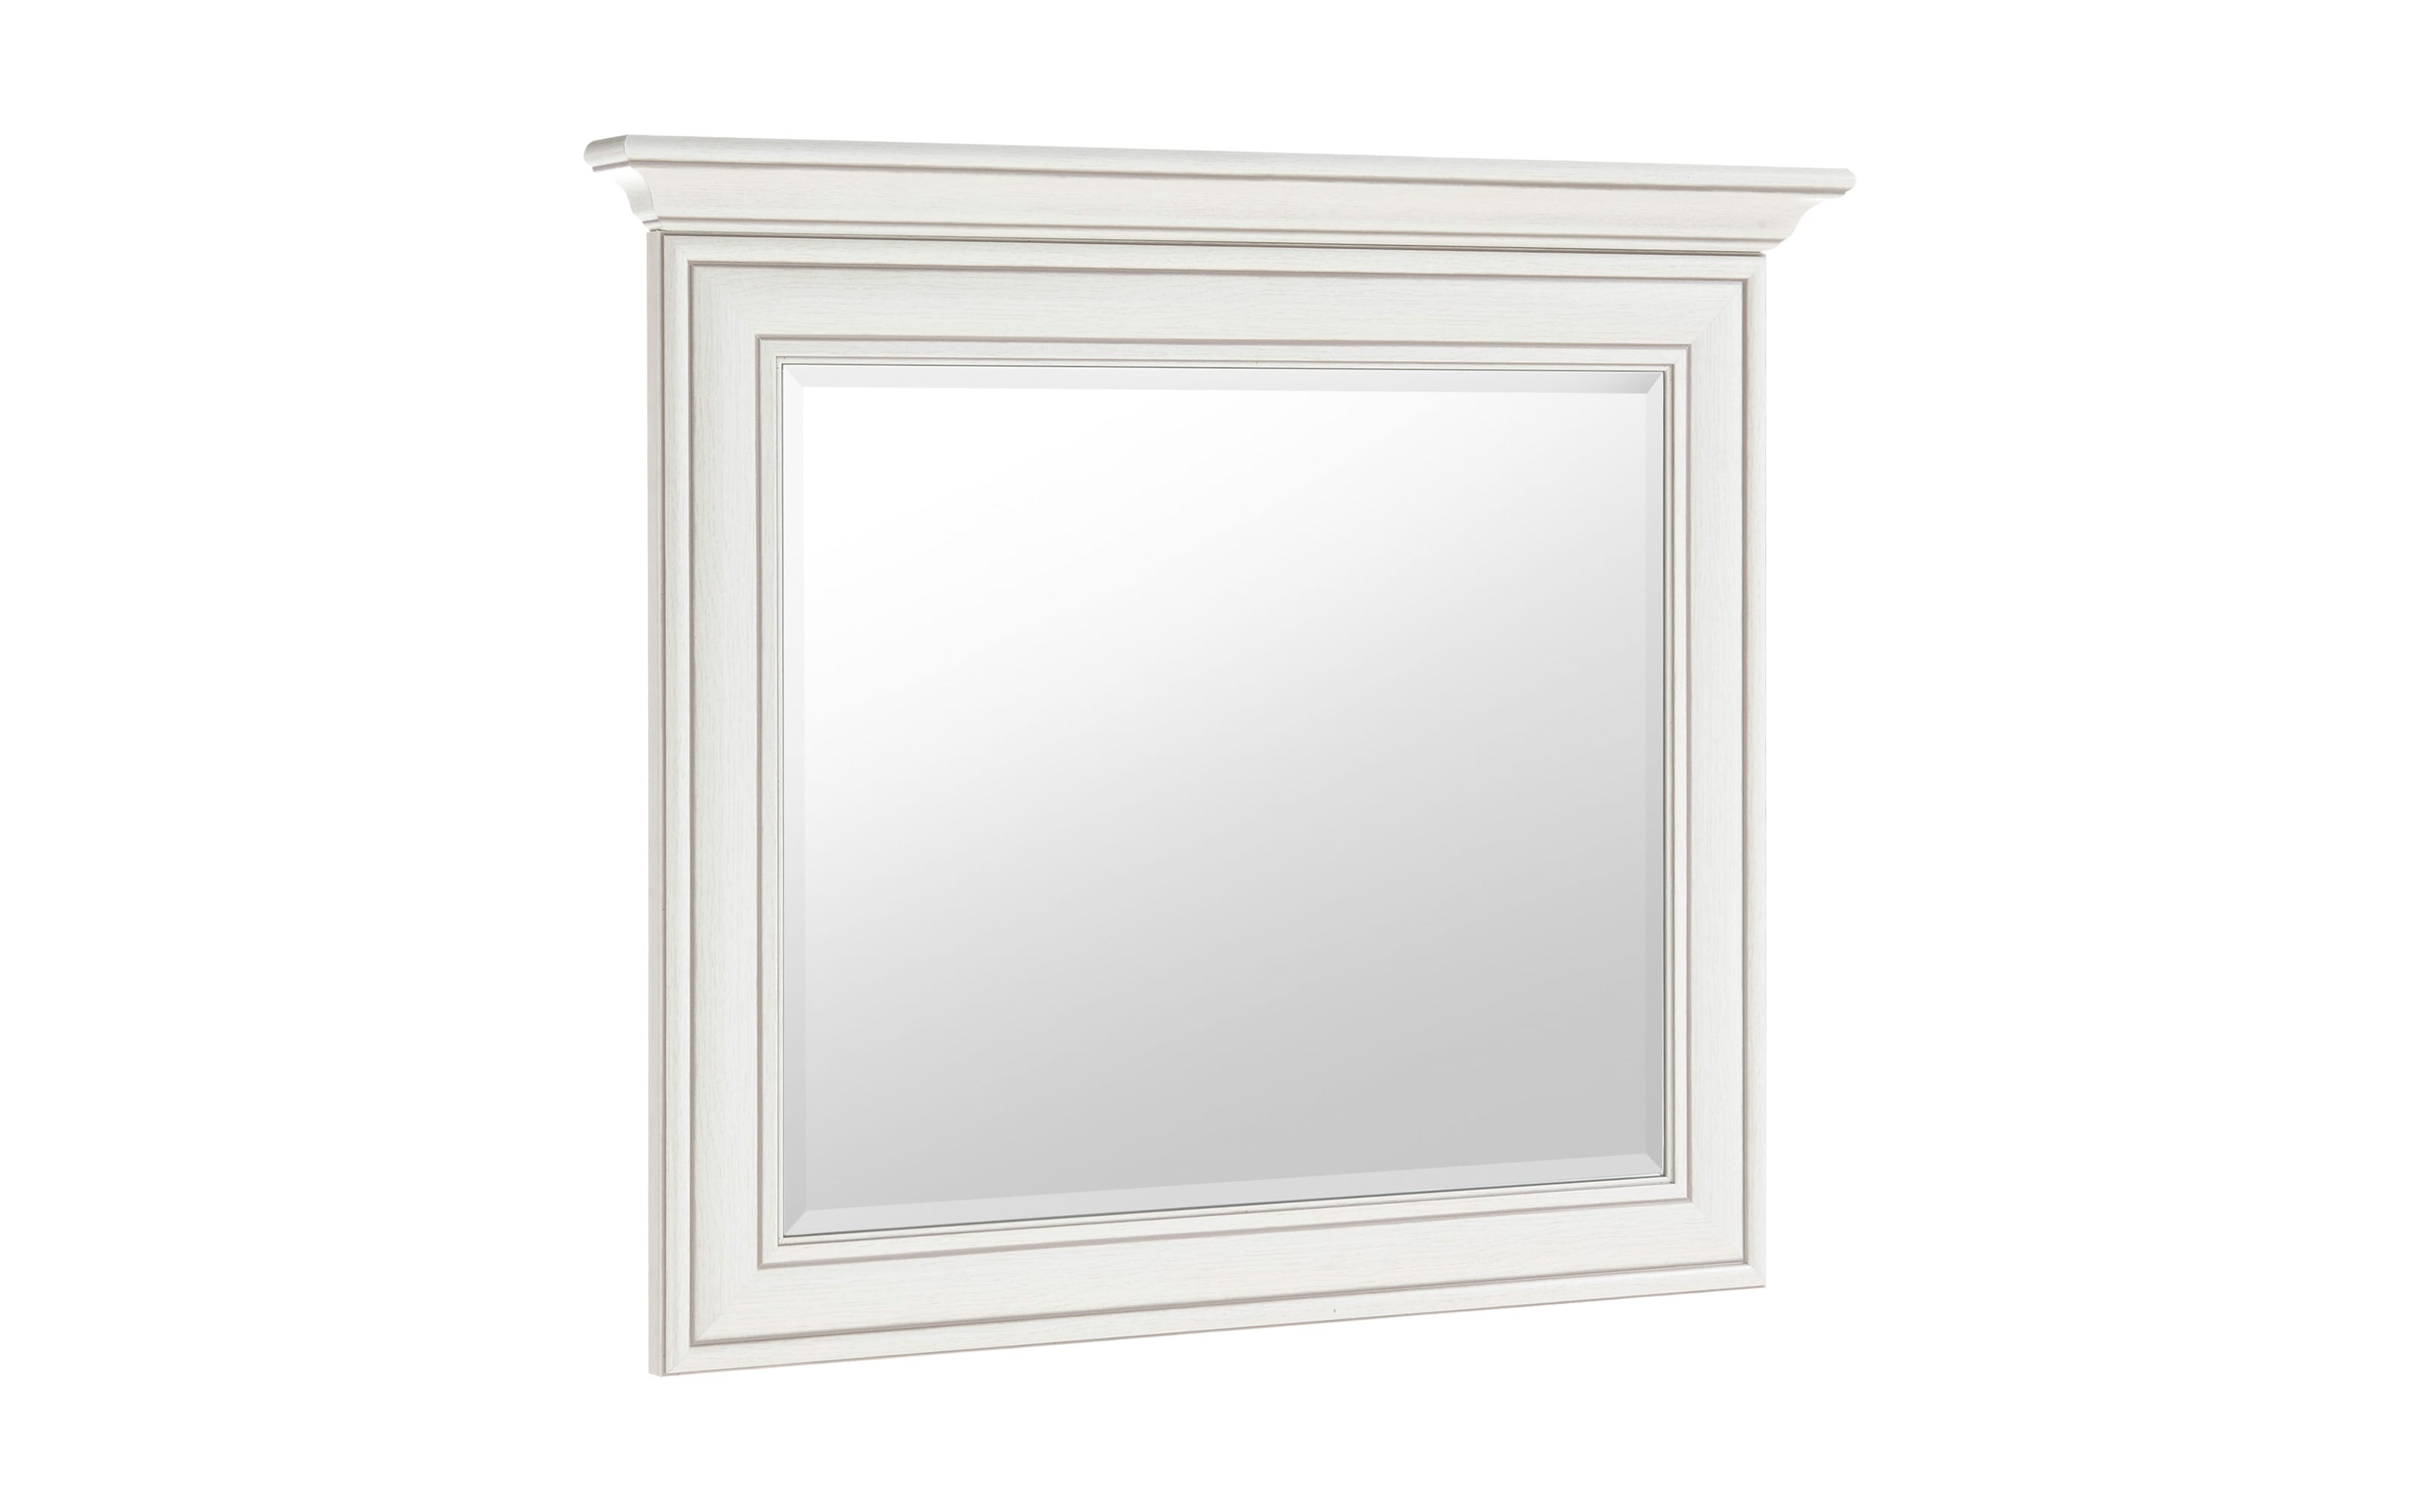 Spiegel Venedig in used white, 88 x 76 cm